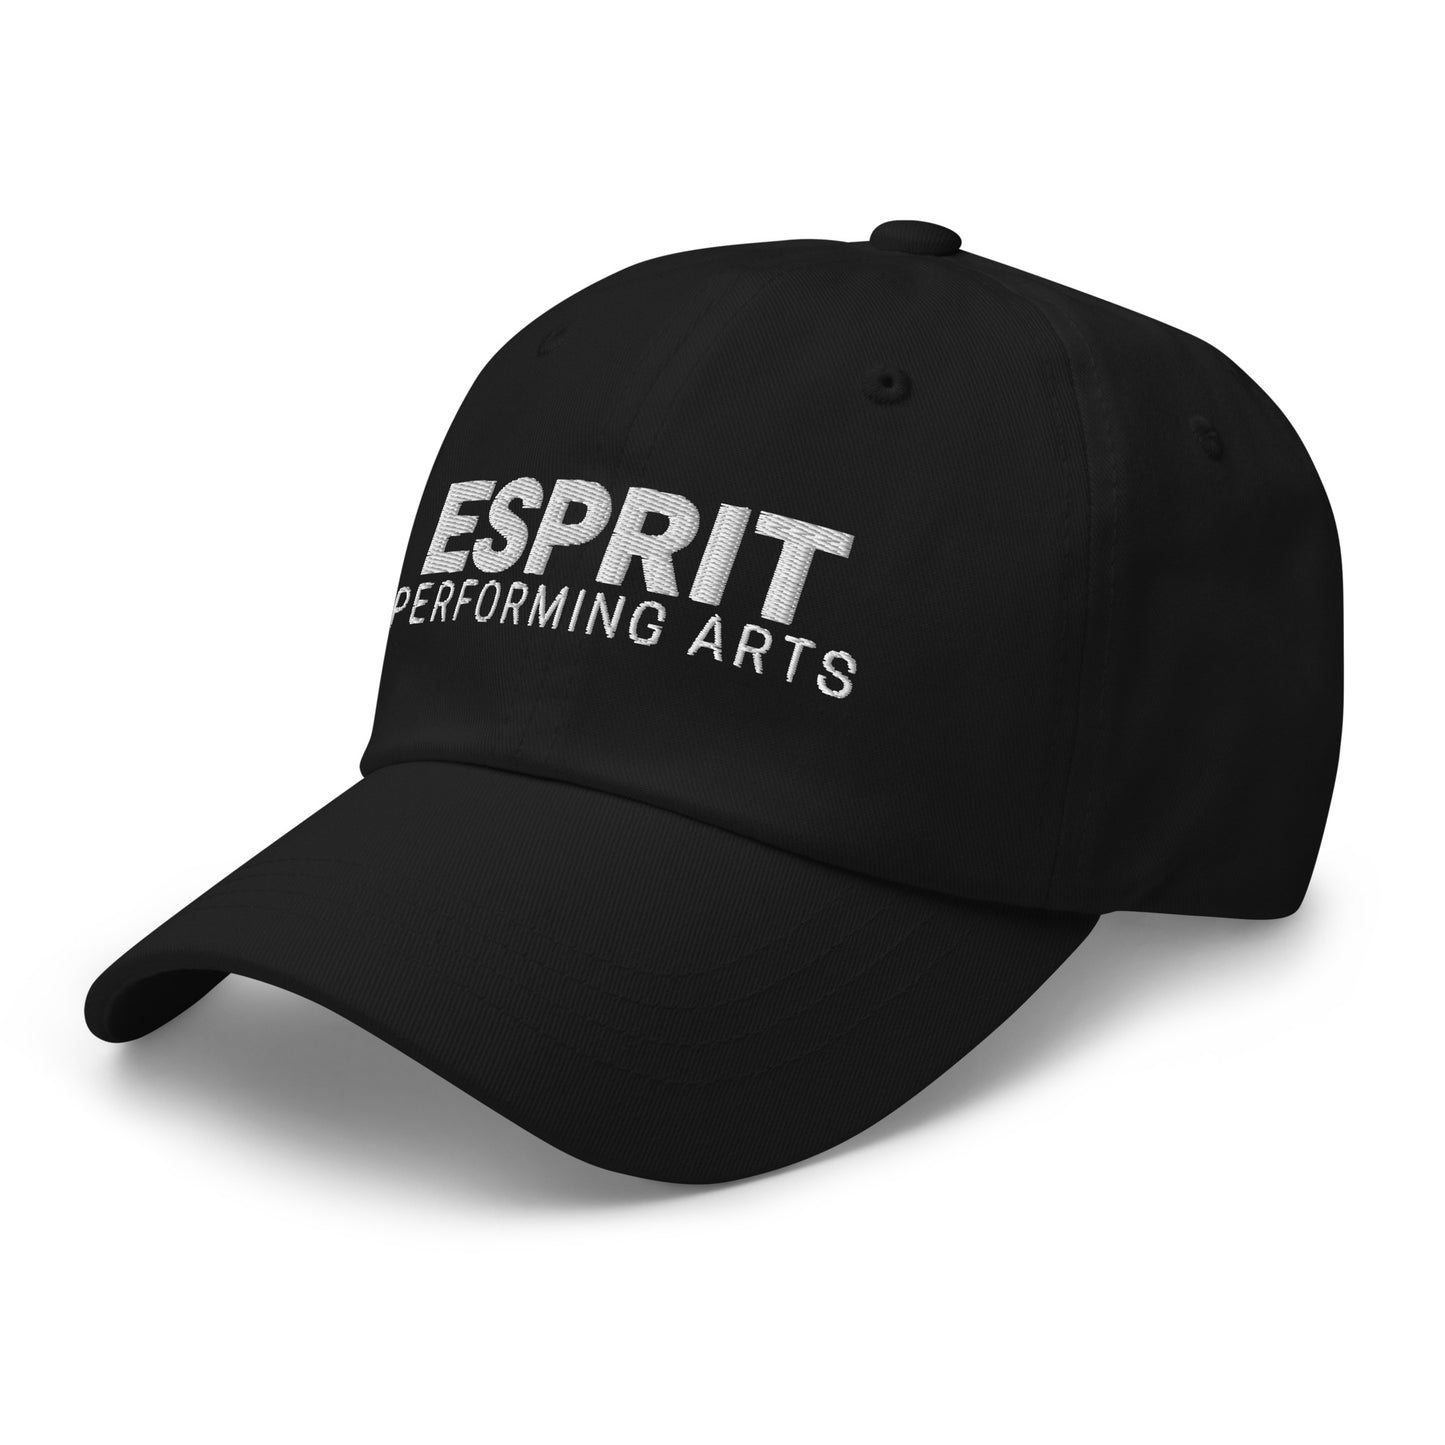 Esprit Performing Arts Hat - Adult